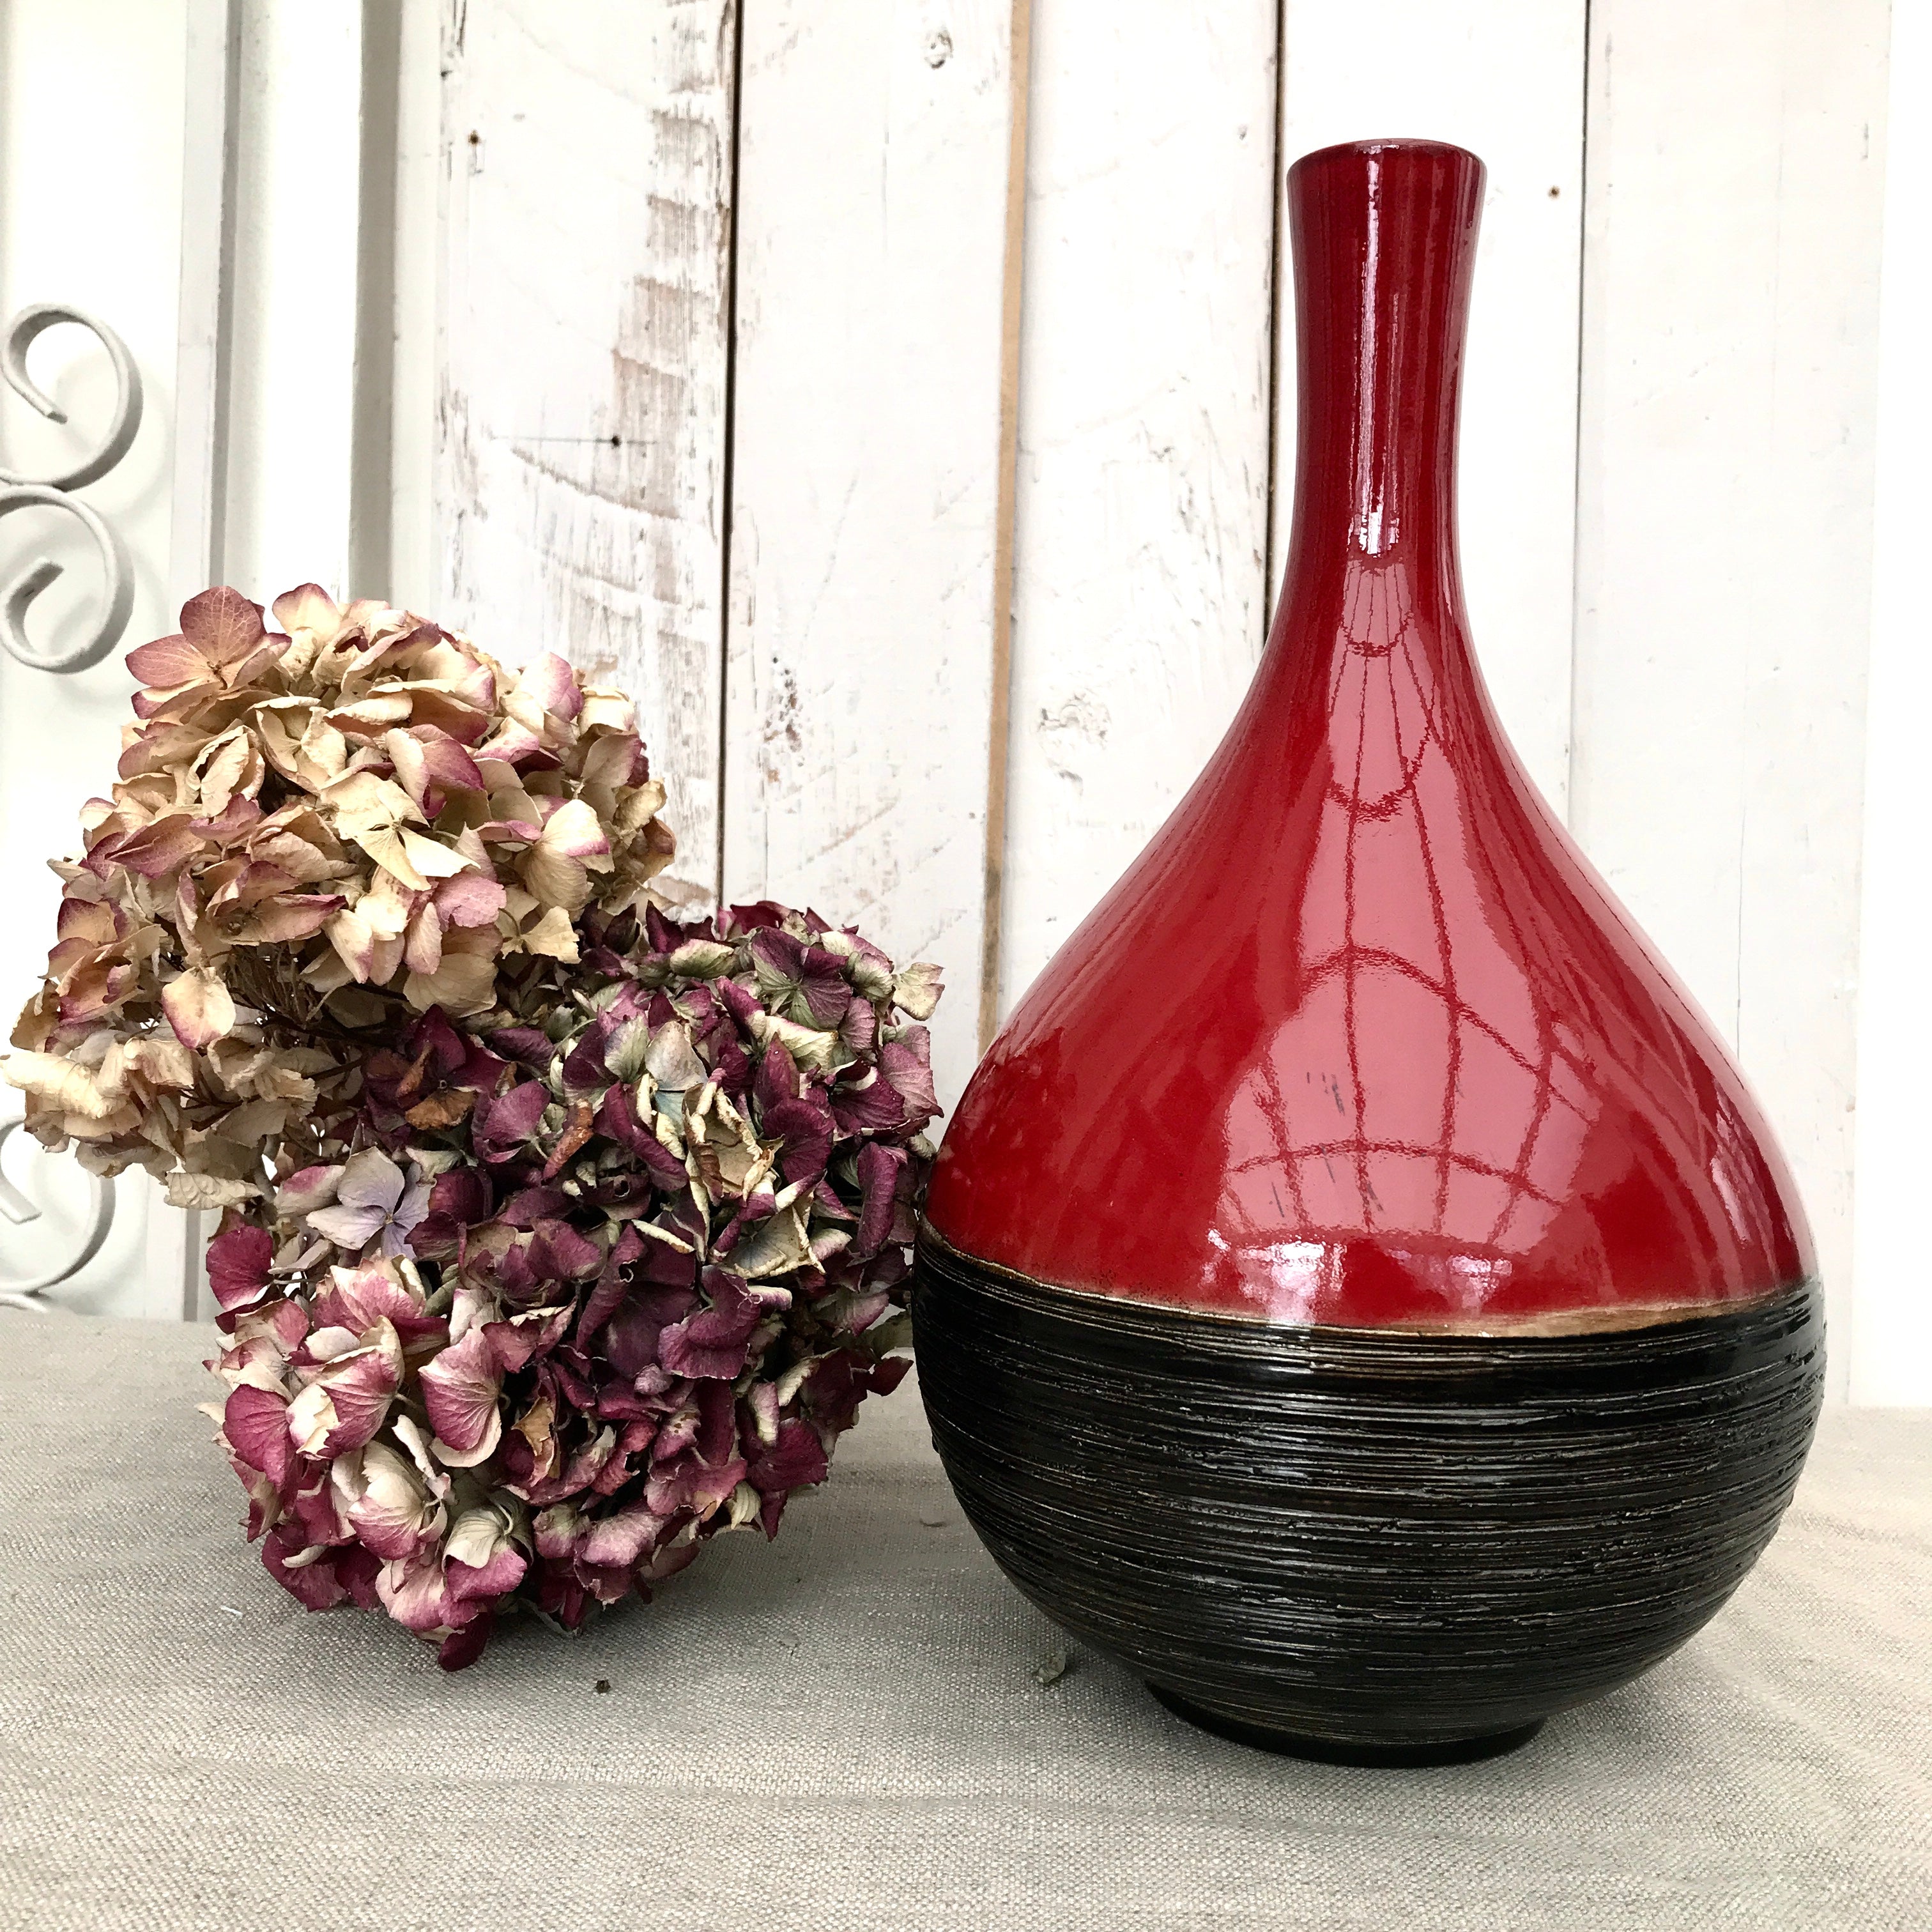 Red and Black Ceramic Vase